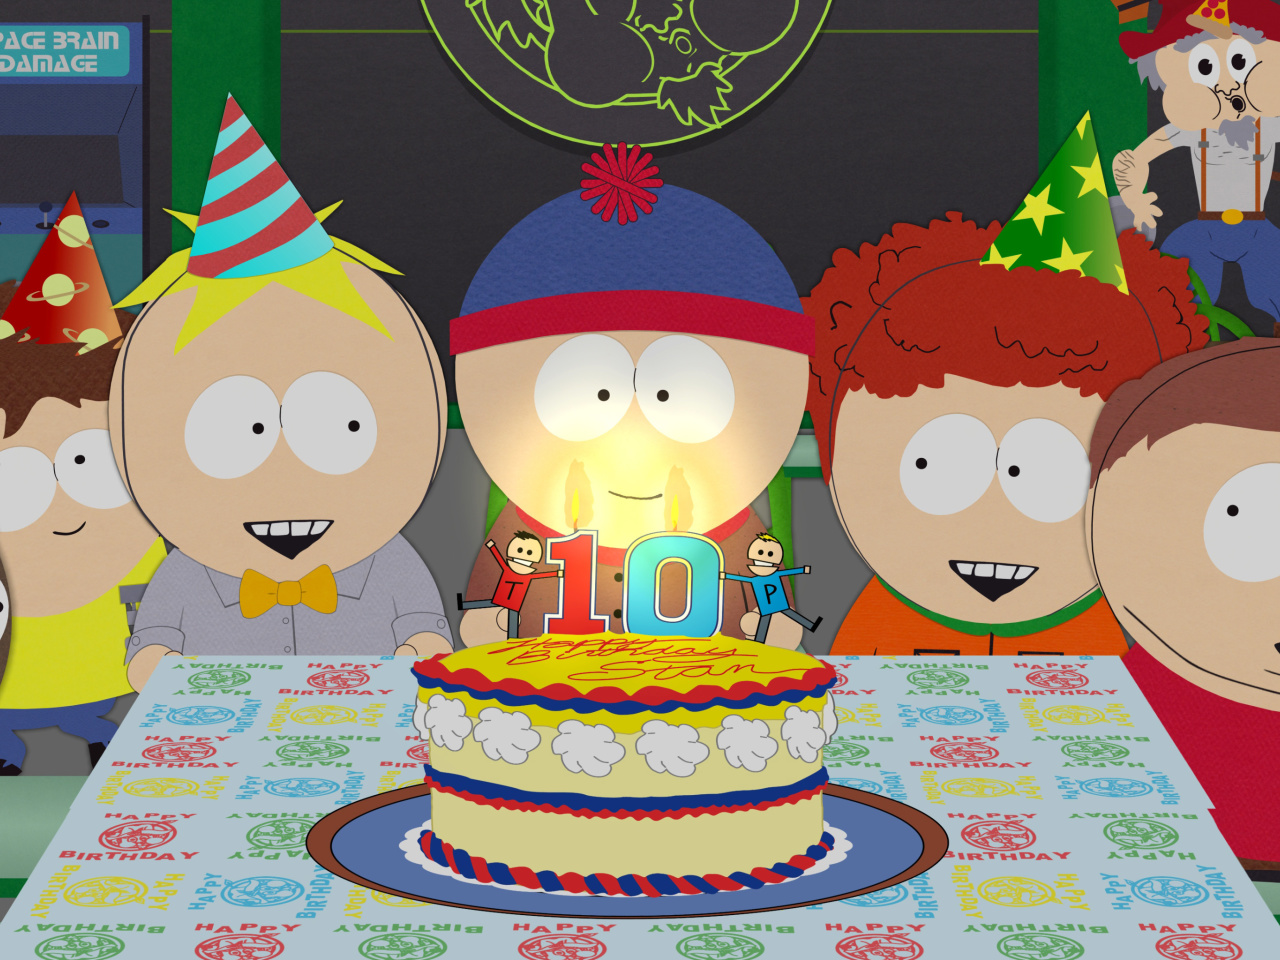 South Park Season 15 Stans Party wallpaper 1280x960